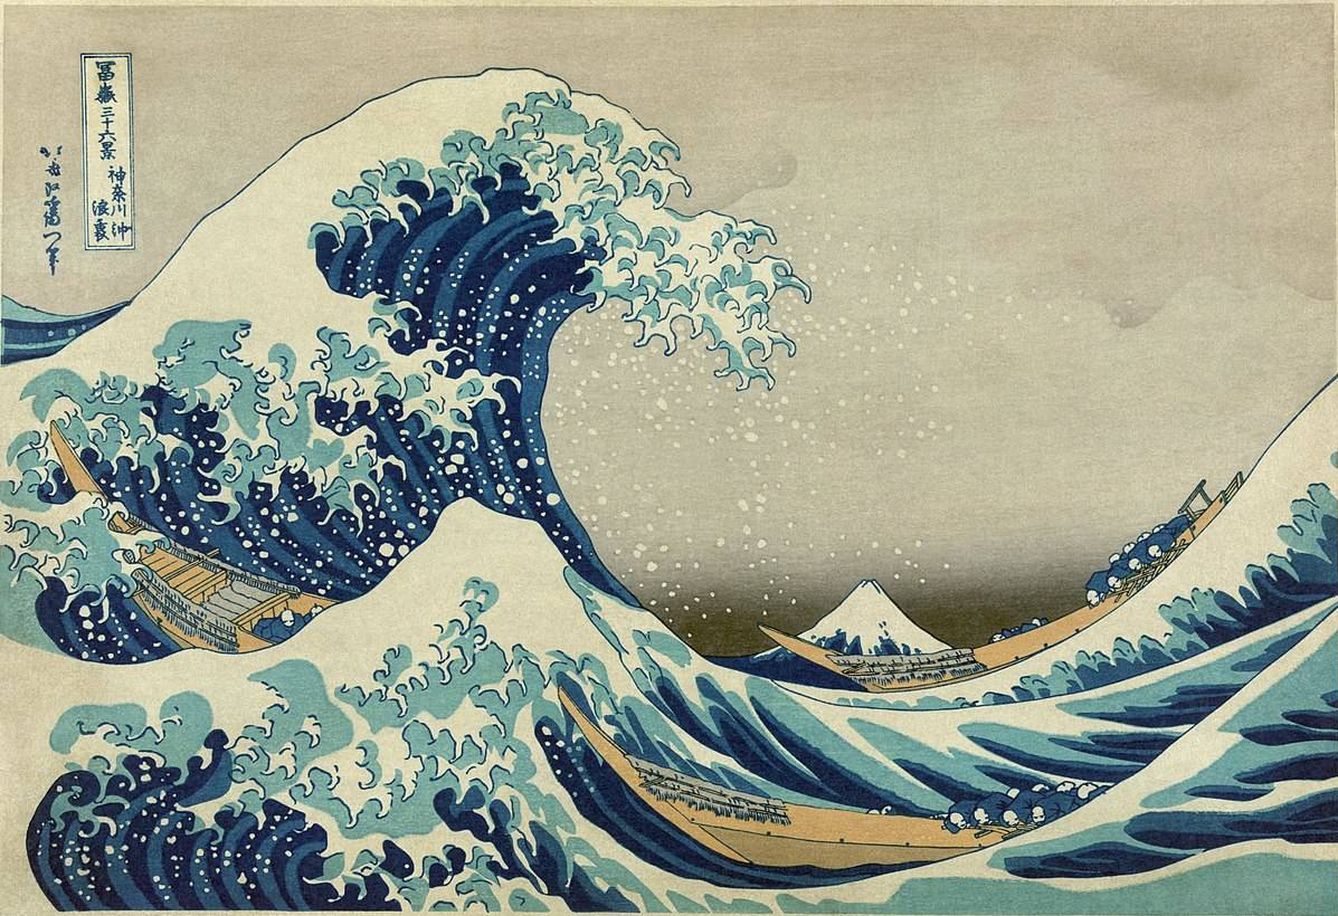 La gran ola de Kanagawa.